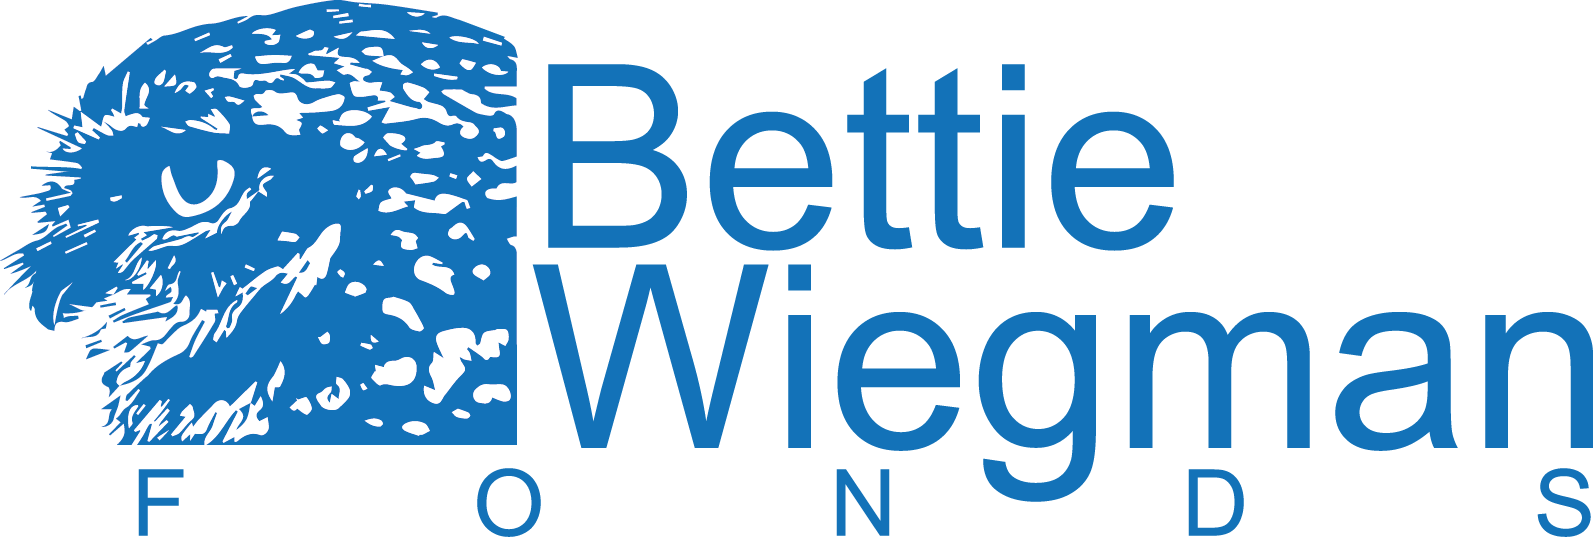 Bettie Wiegman Fonds